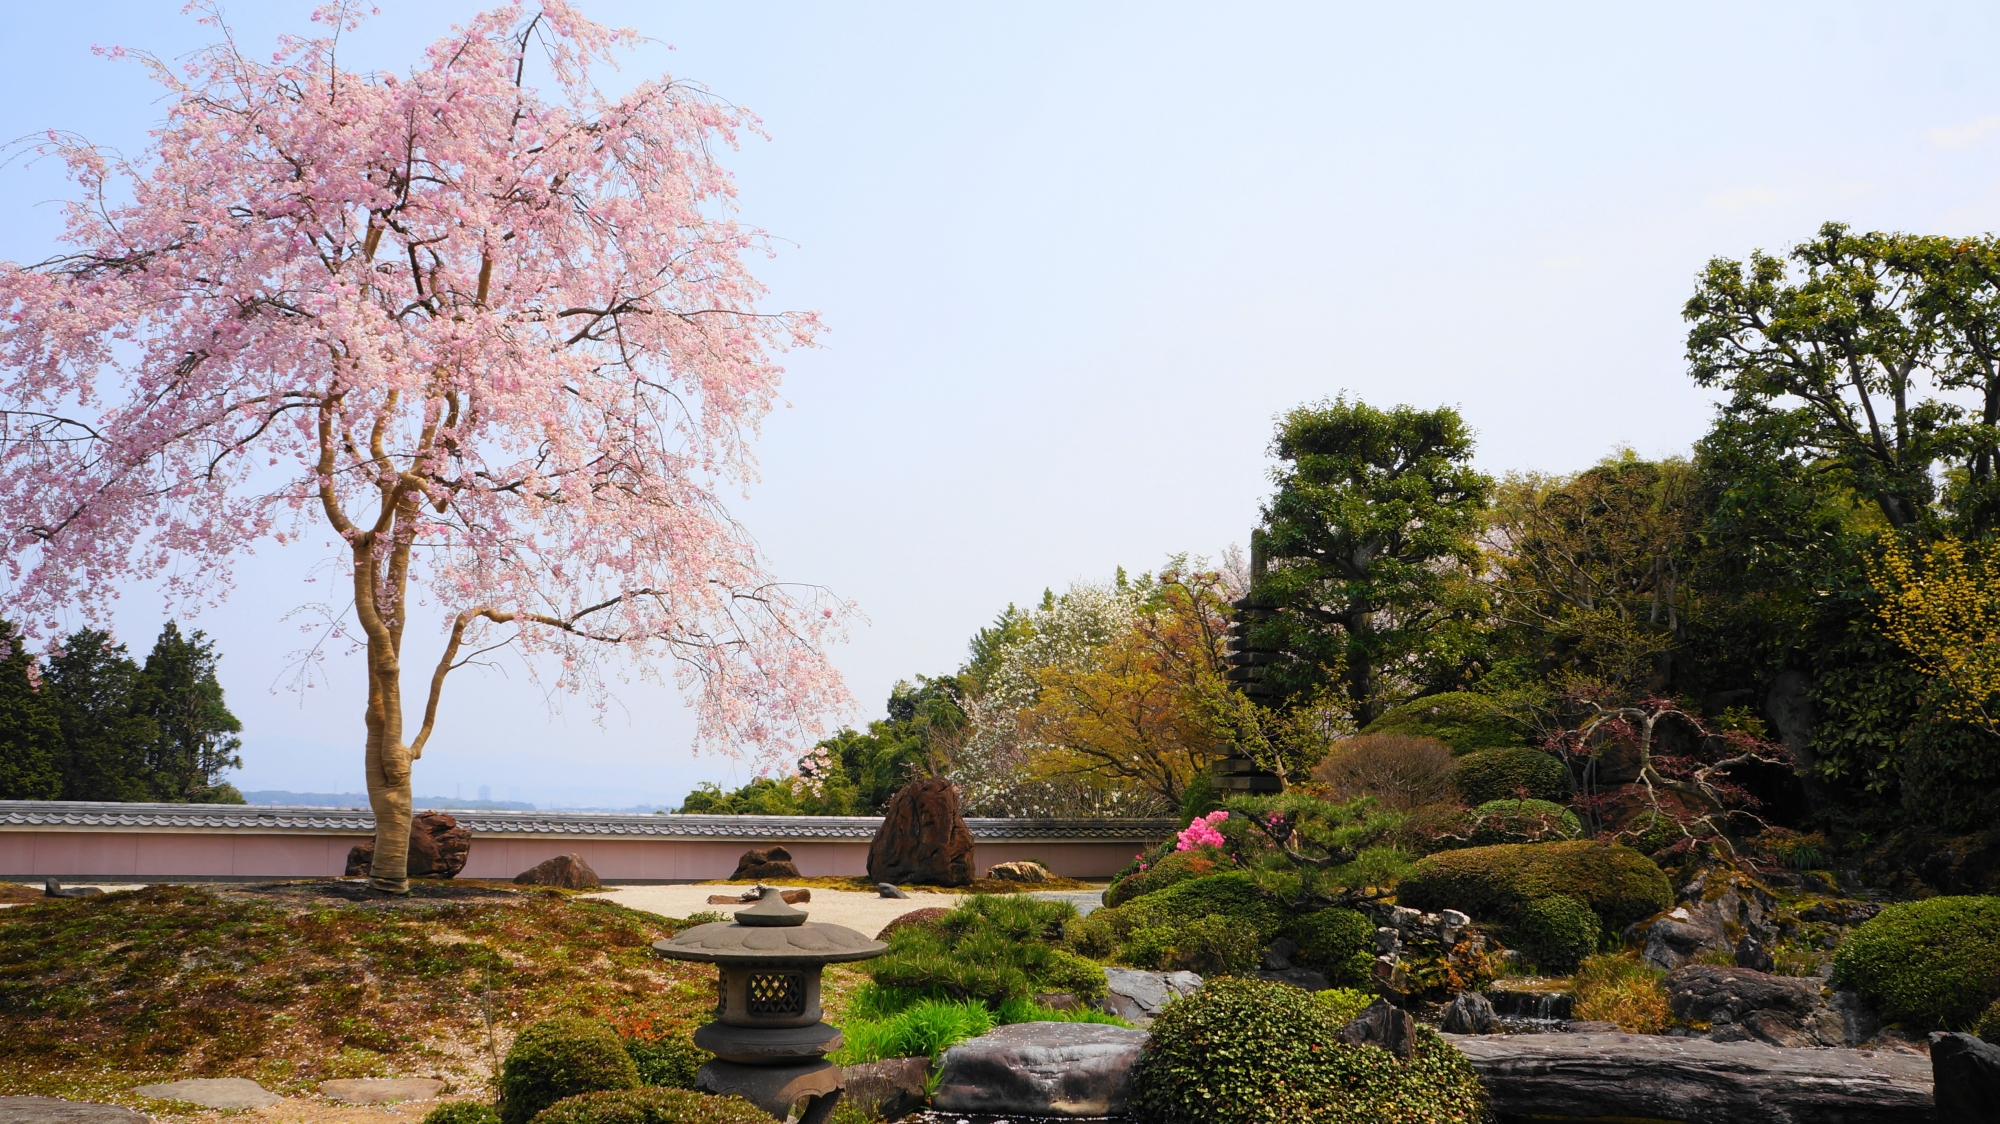 中心に立派な一本のしだれ桜が佇む宝生苑